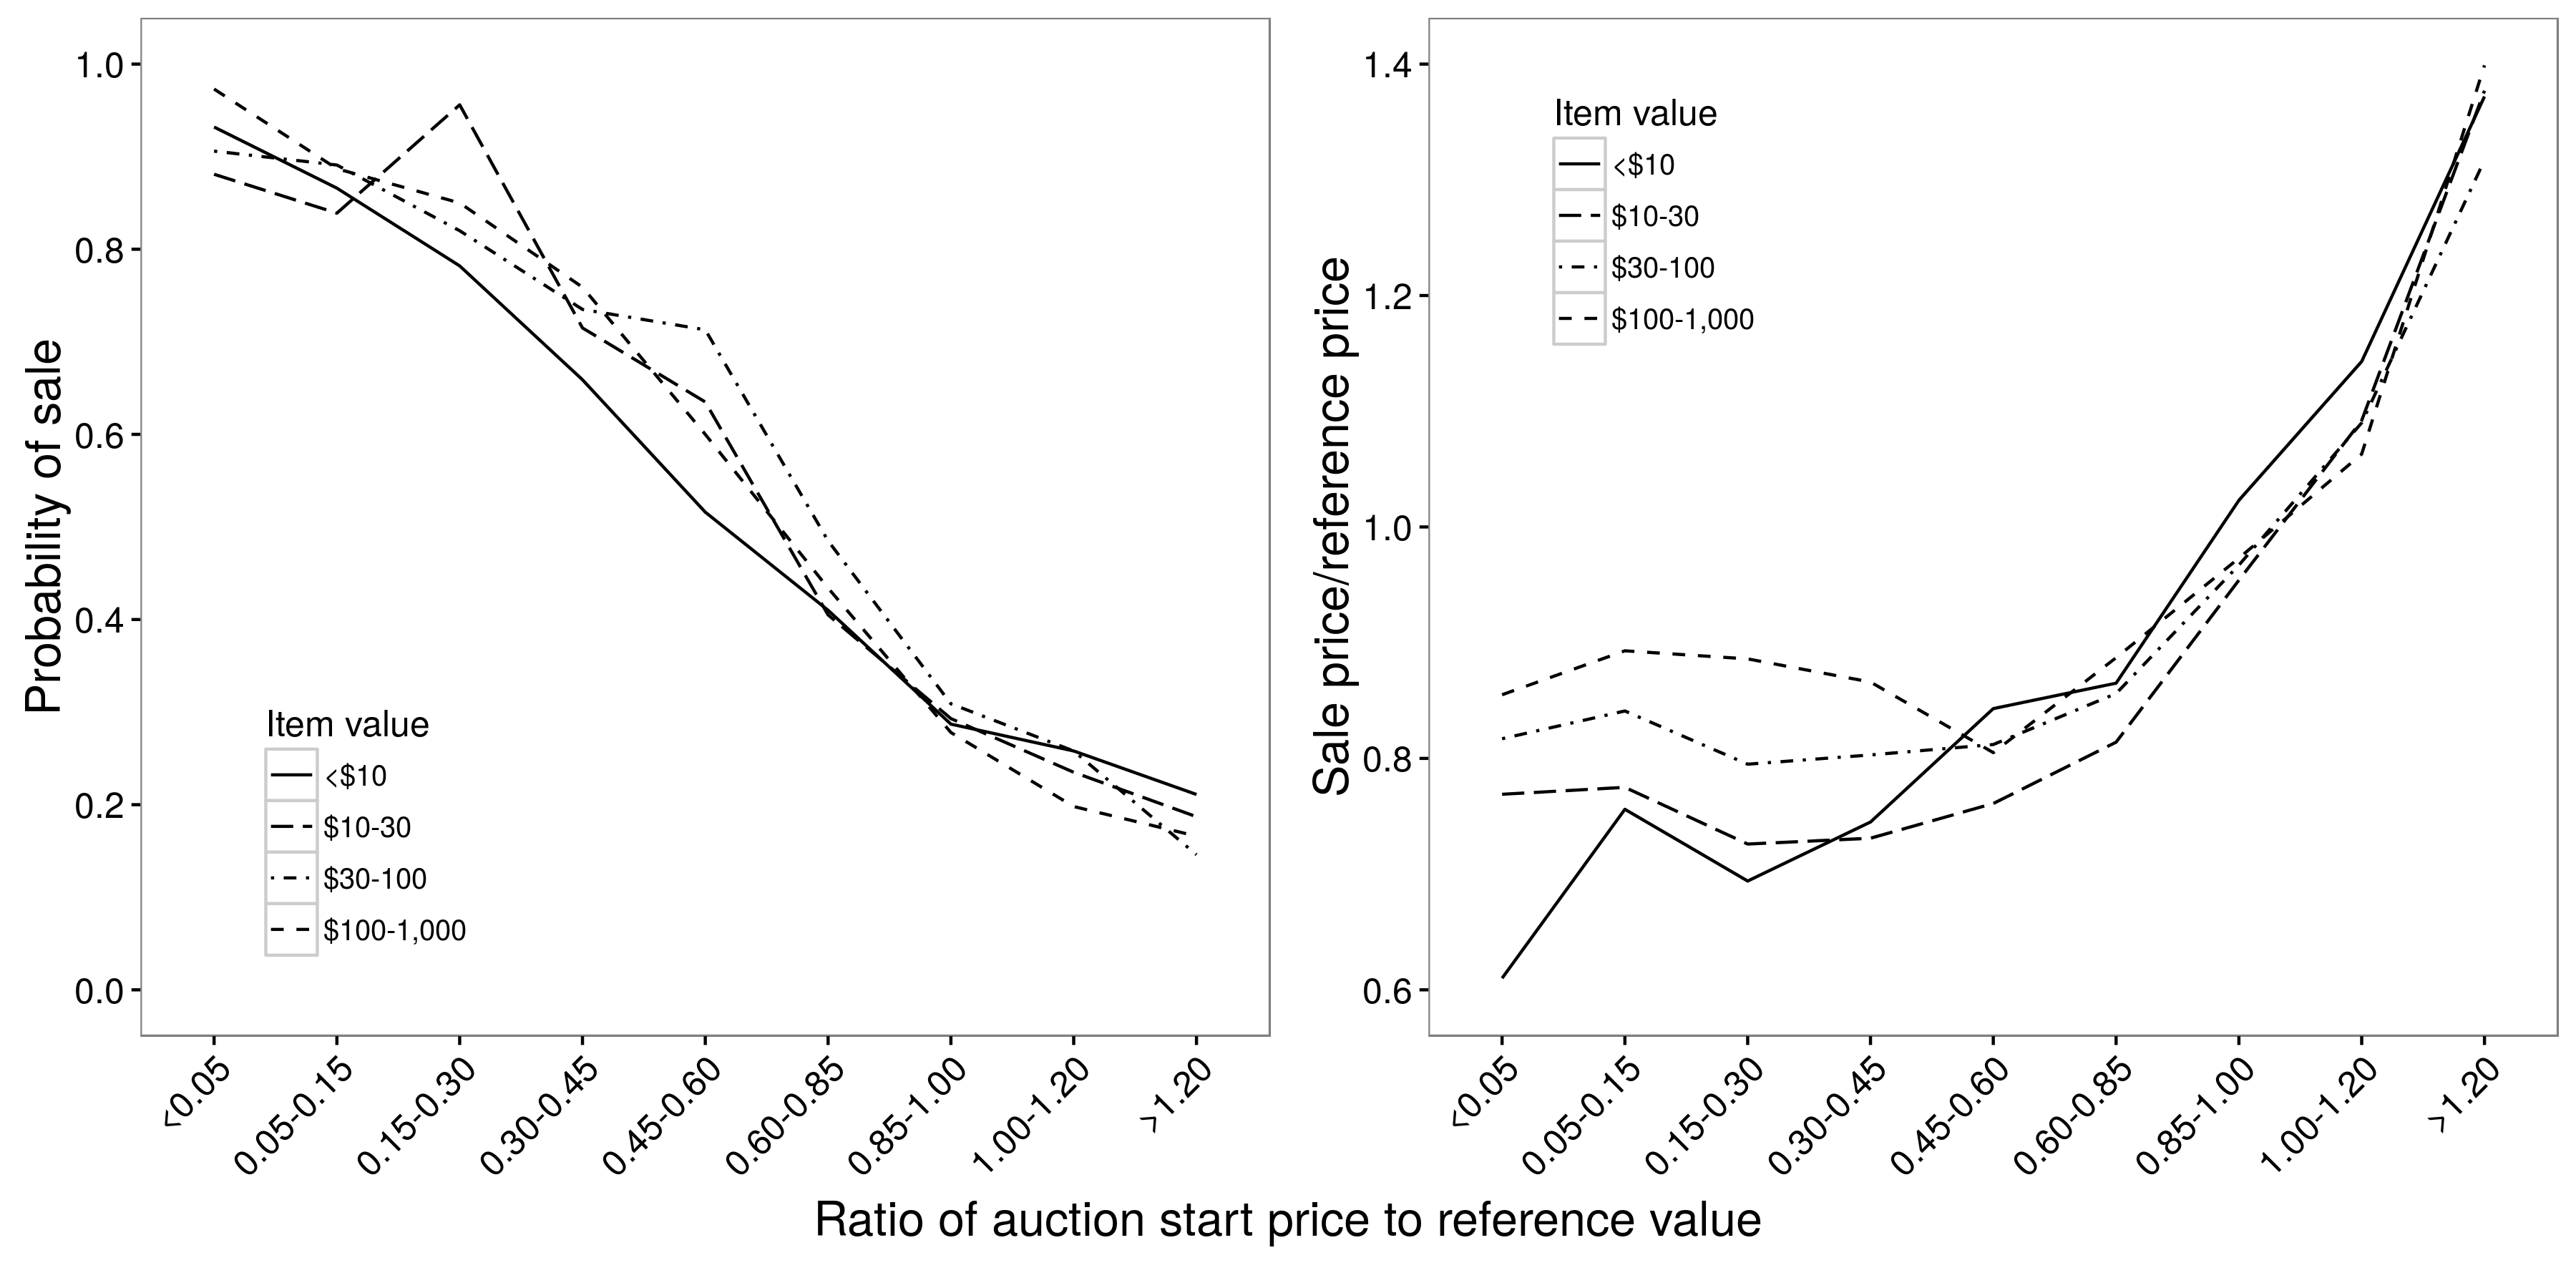 Obrázek 2.9: Vztah mezi počáteční cenou dražby a pravděpodobností prodeje (a) a prodejní cenou (b). Existuje zhruba lineární vztah mezi počáteční cenou a pravděpodobností prodeje, ale nelineární vztah mezi počáteční cenou a prodejní cenou; pro počáteční ceny mezi 0,05 a 0,85 má počáteční cena velmi malý dopad na prodejní cenu. V obou případech jsou vztahy v zásadě nezávislé na hodnotě položky. Adaptace od Einav et al. (2015), obrázky 4a a 4b.